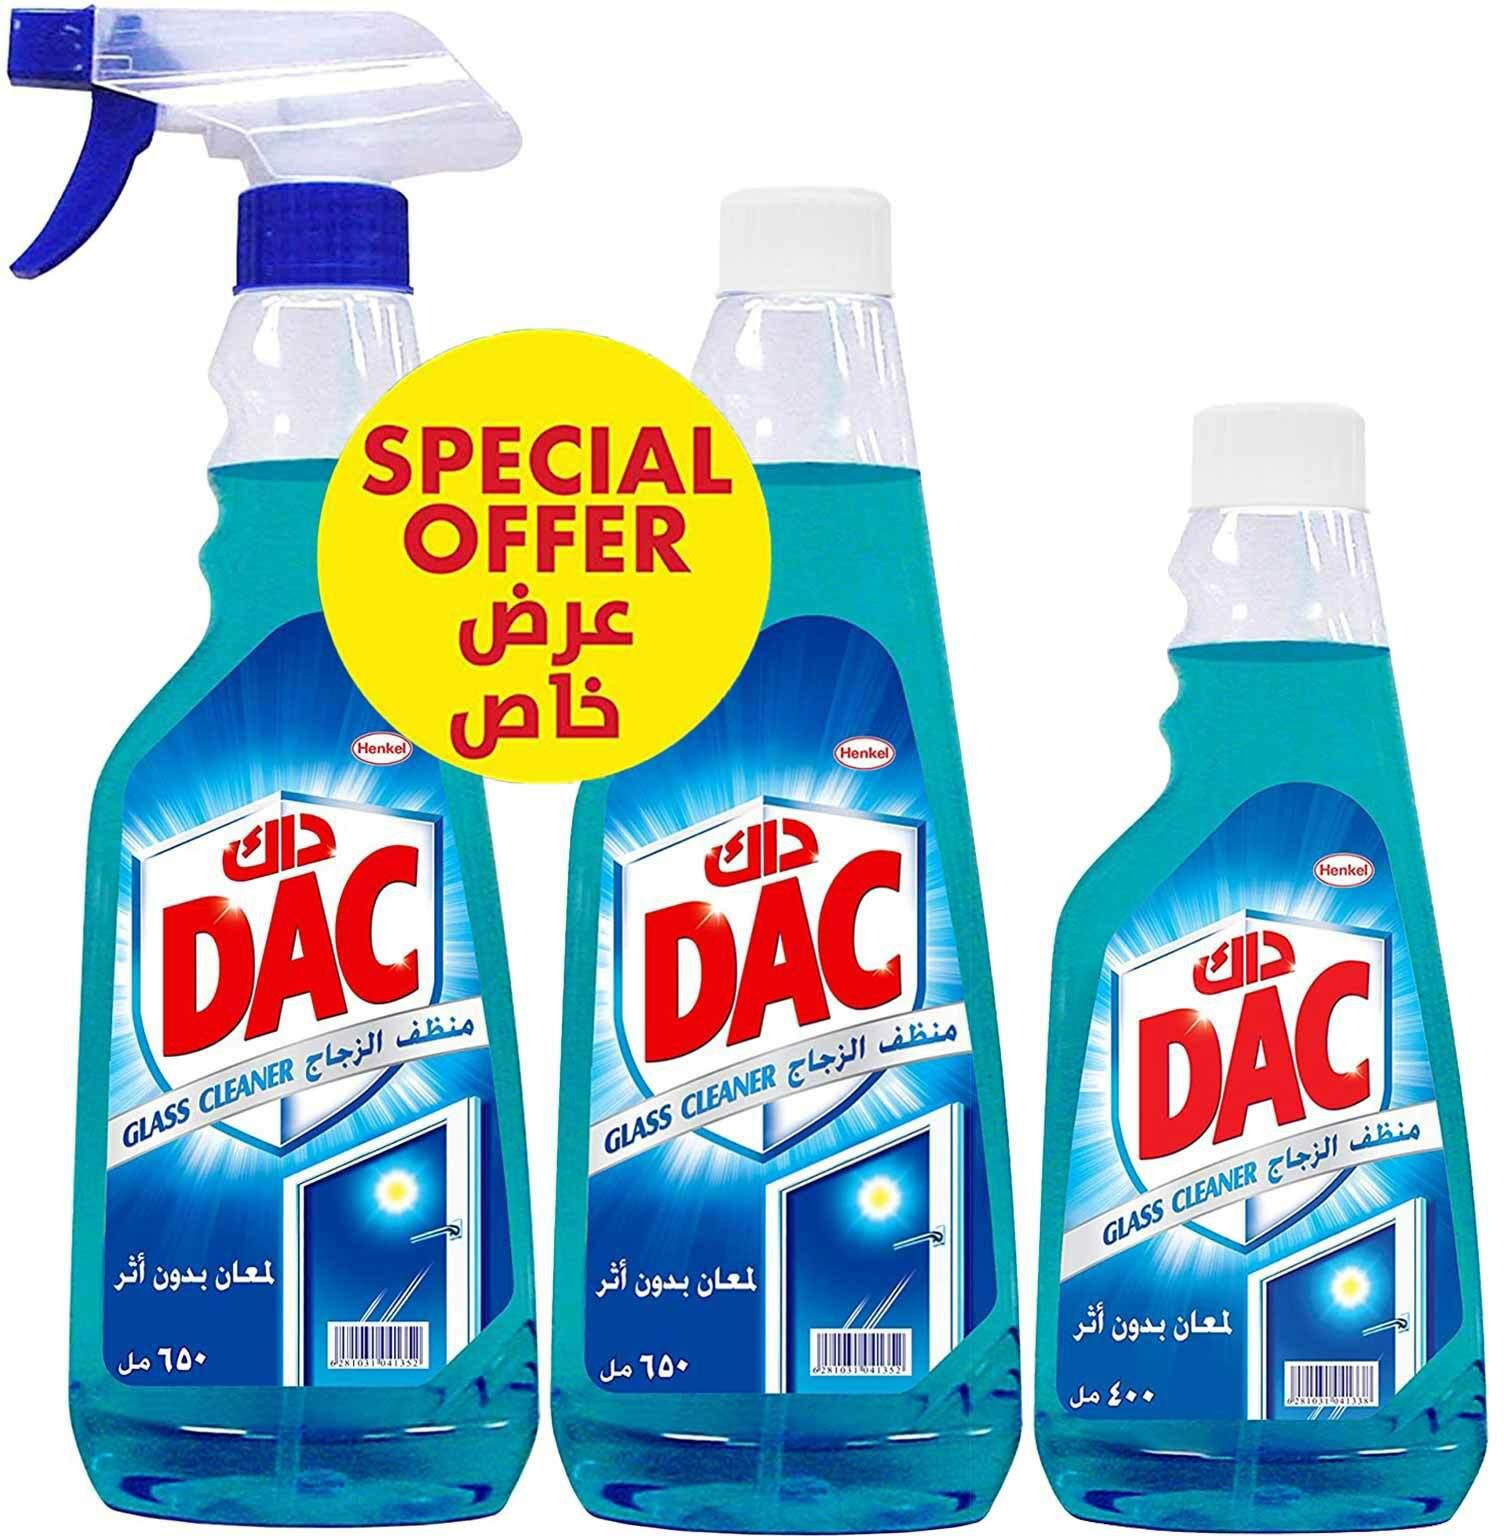 Dac glass cleaner  650 ml x 2 + 400 ml free